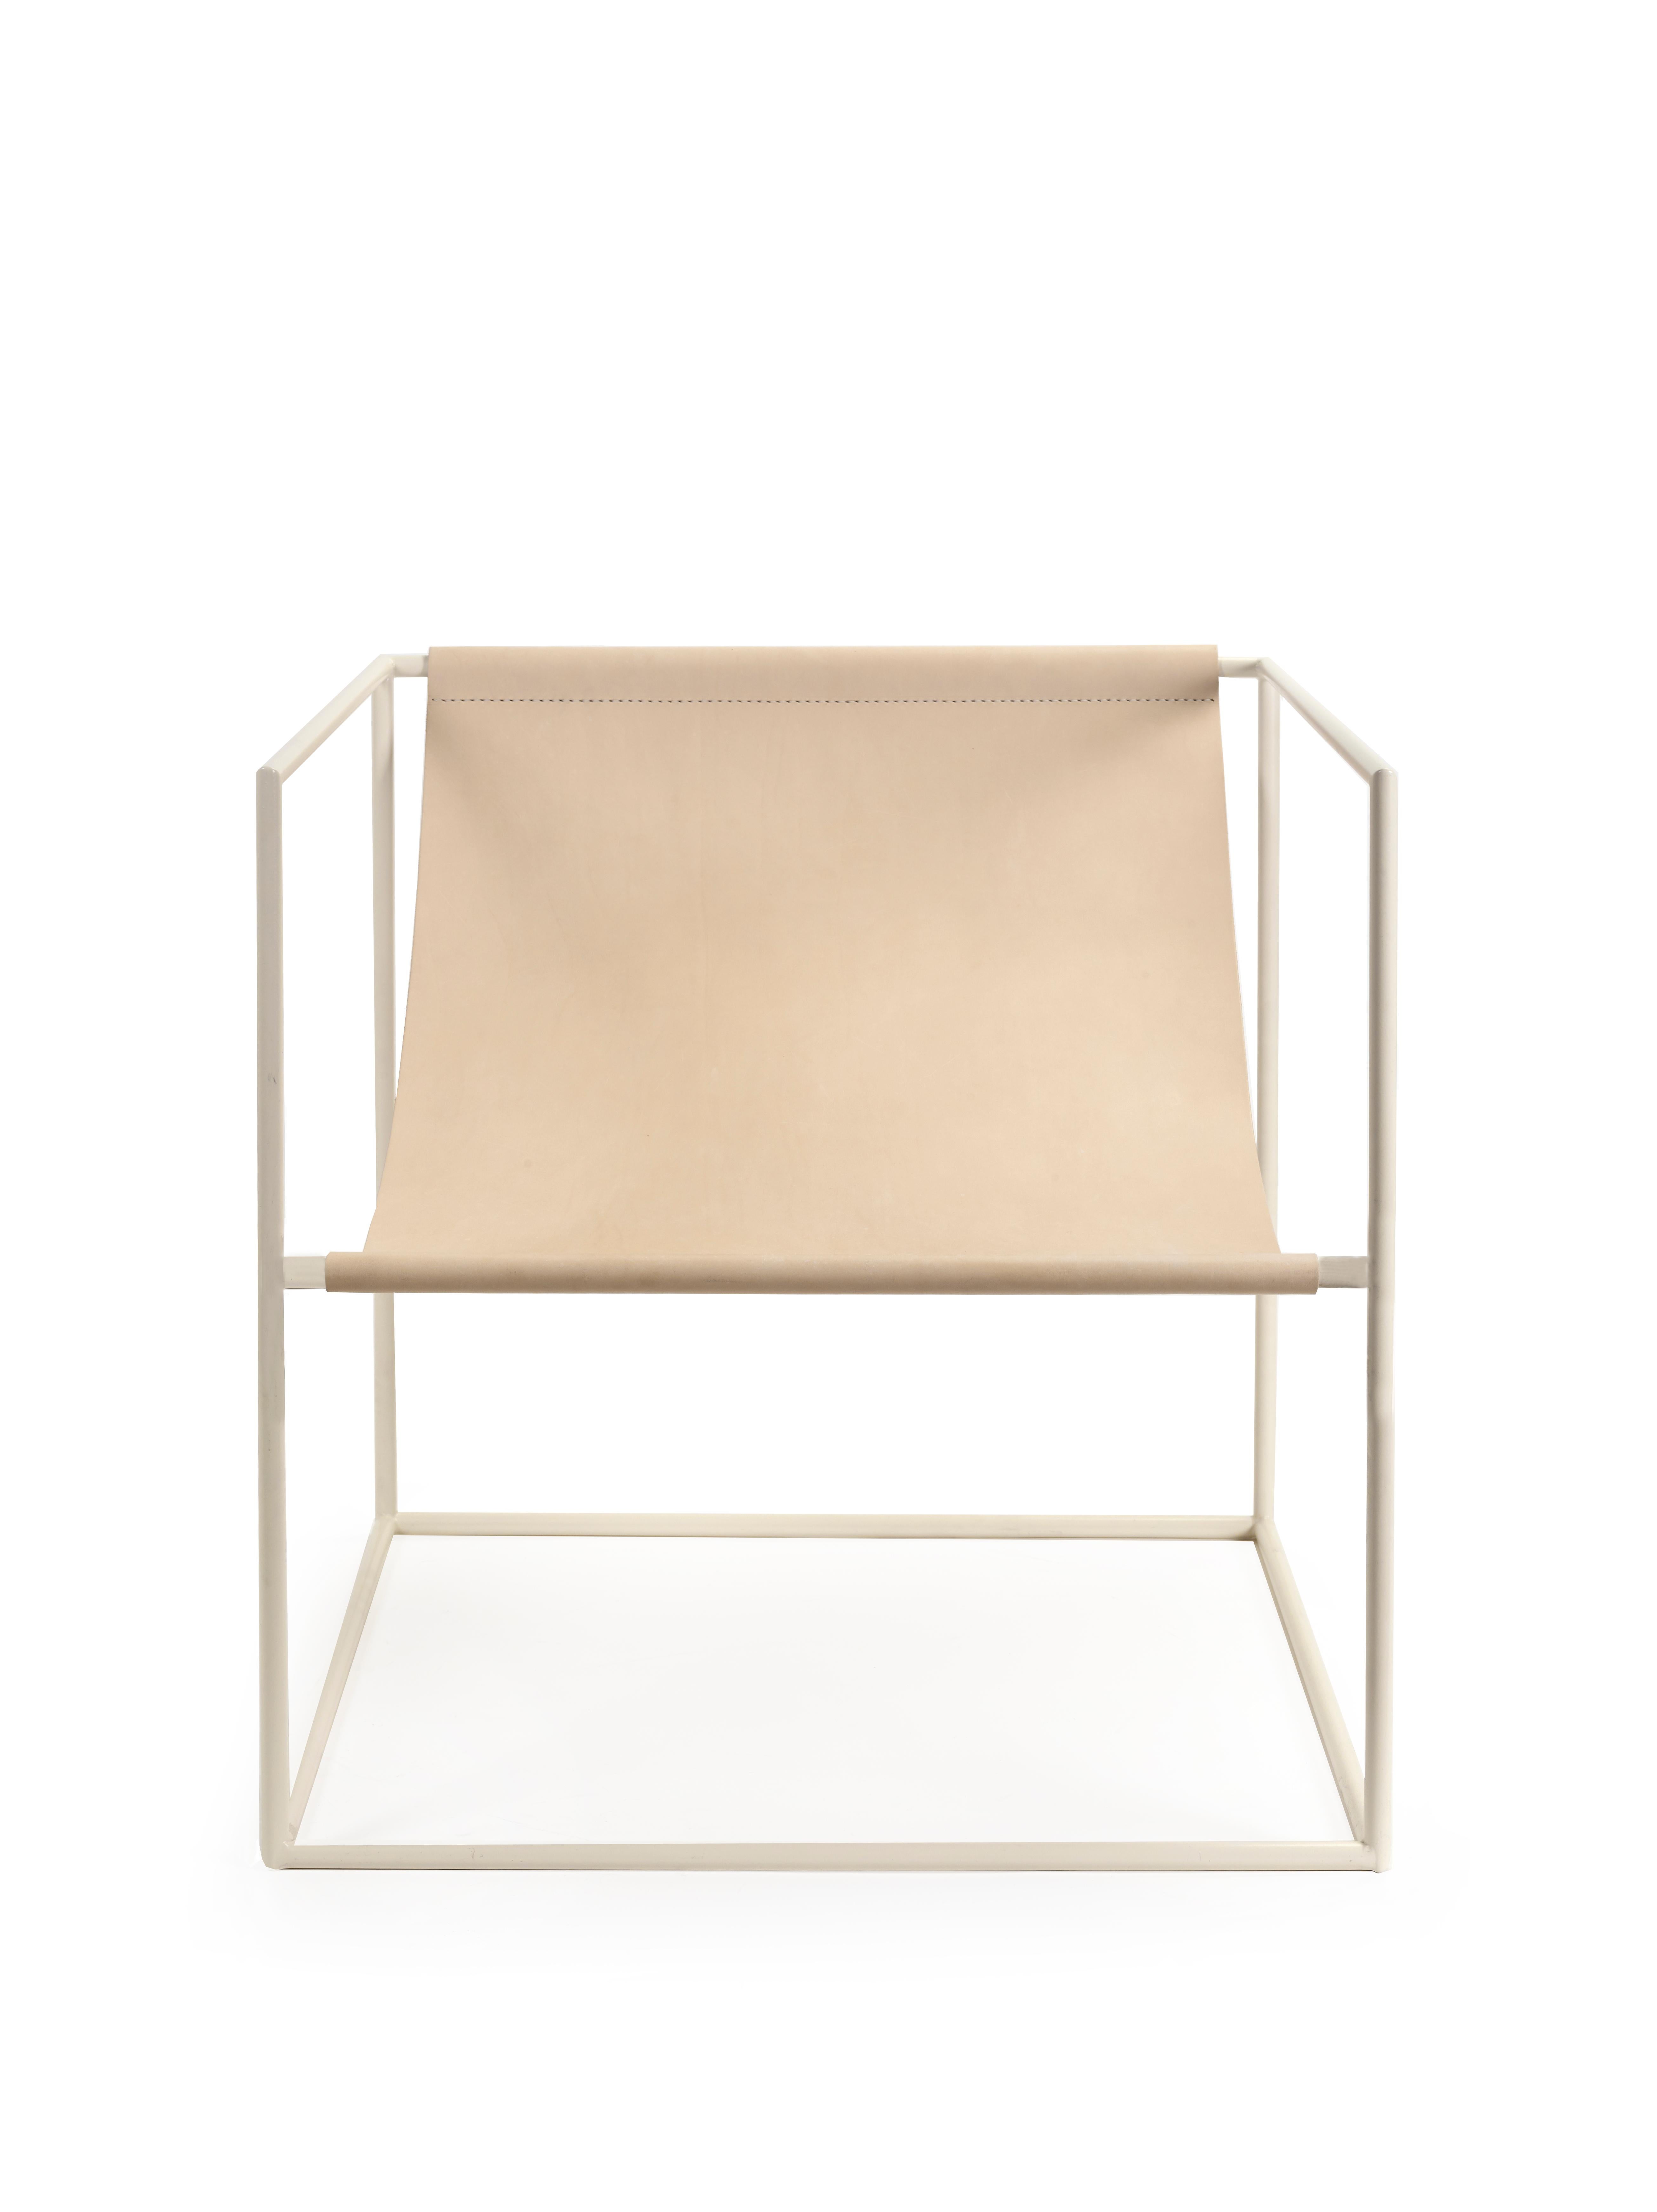 Solo Seat Zeitgenössische Sitzgelegenheiten
von Muller Van severen

Modell: weiß - Gestell + Leder - Sitz (V9018022)
Abmessungen: H. 61 cm x 62 cm x 62 cm (SH 34 cm)

Im Gegensatz zu einem massiven Sofa, das einen Teil des Innenraums umhüllt, sorgt